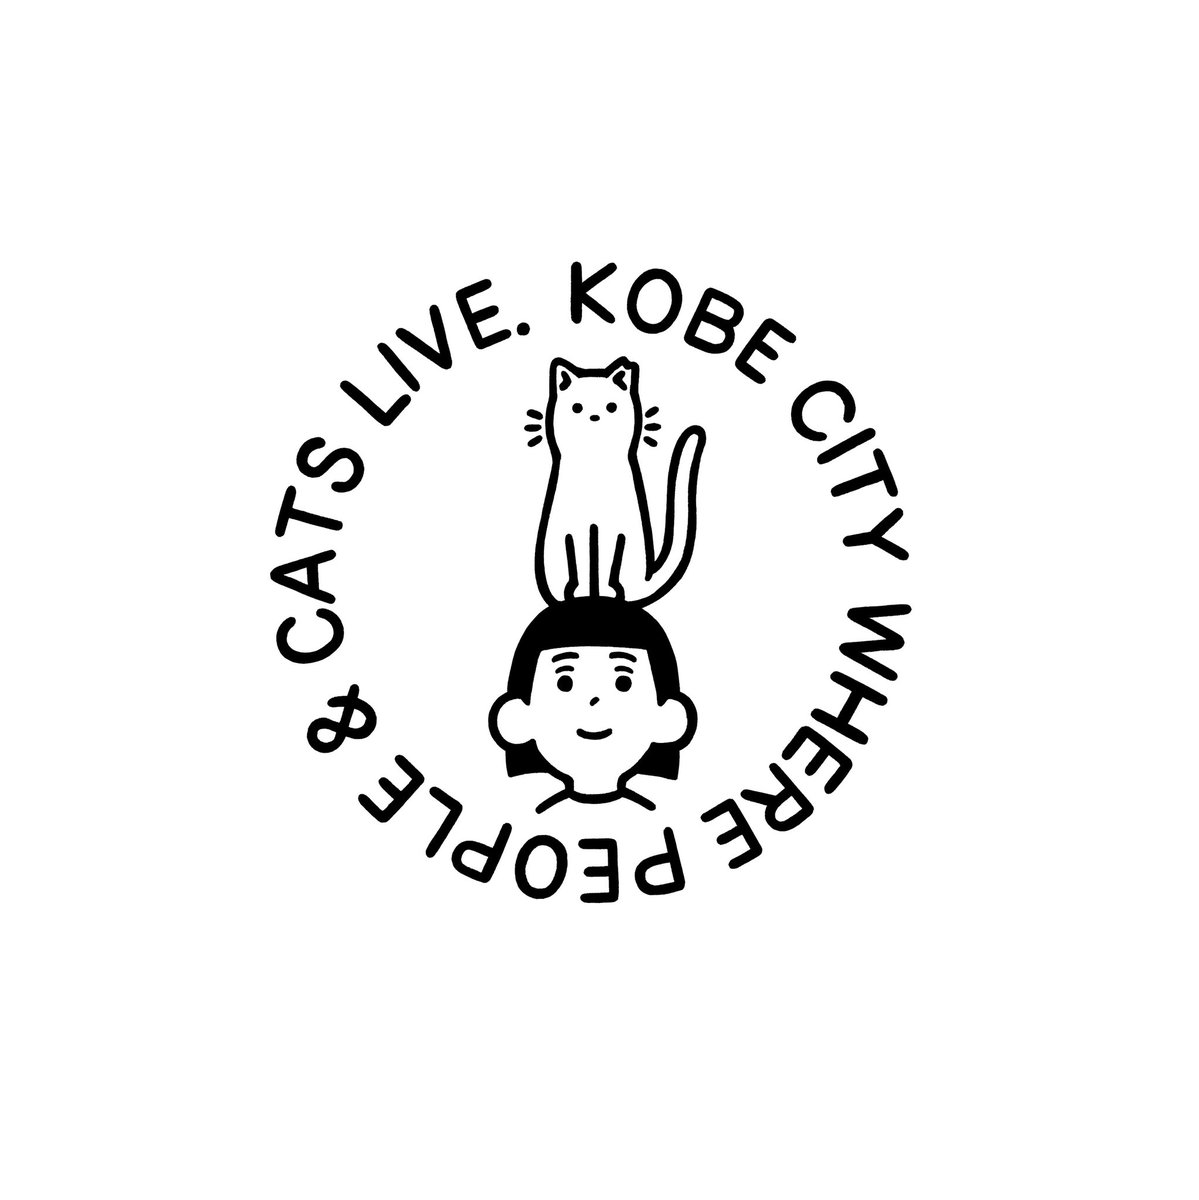 神戸市の動物愛護支援事業でふるさと納税がどの様な取り組みに使われているかを紹介する冊子「ひとと猫が共生する街、神戸」のスタートアップのディレクションとイラストを担当しました。
https://t.co/ls2kfic2Tg 